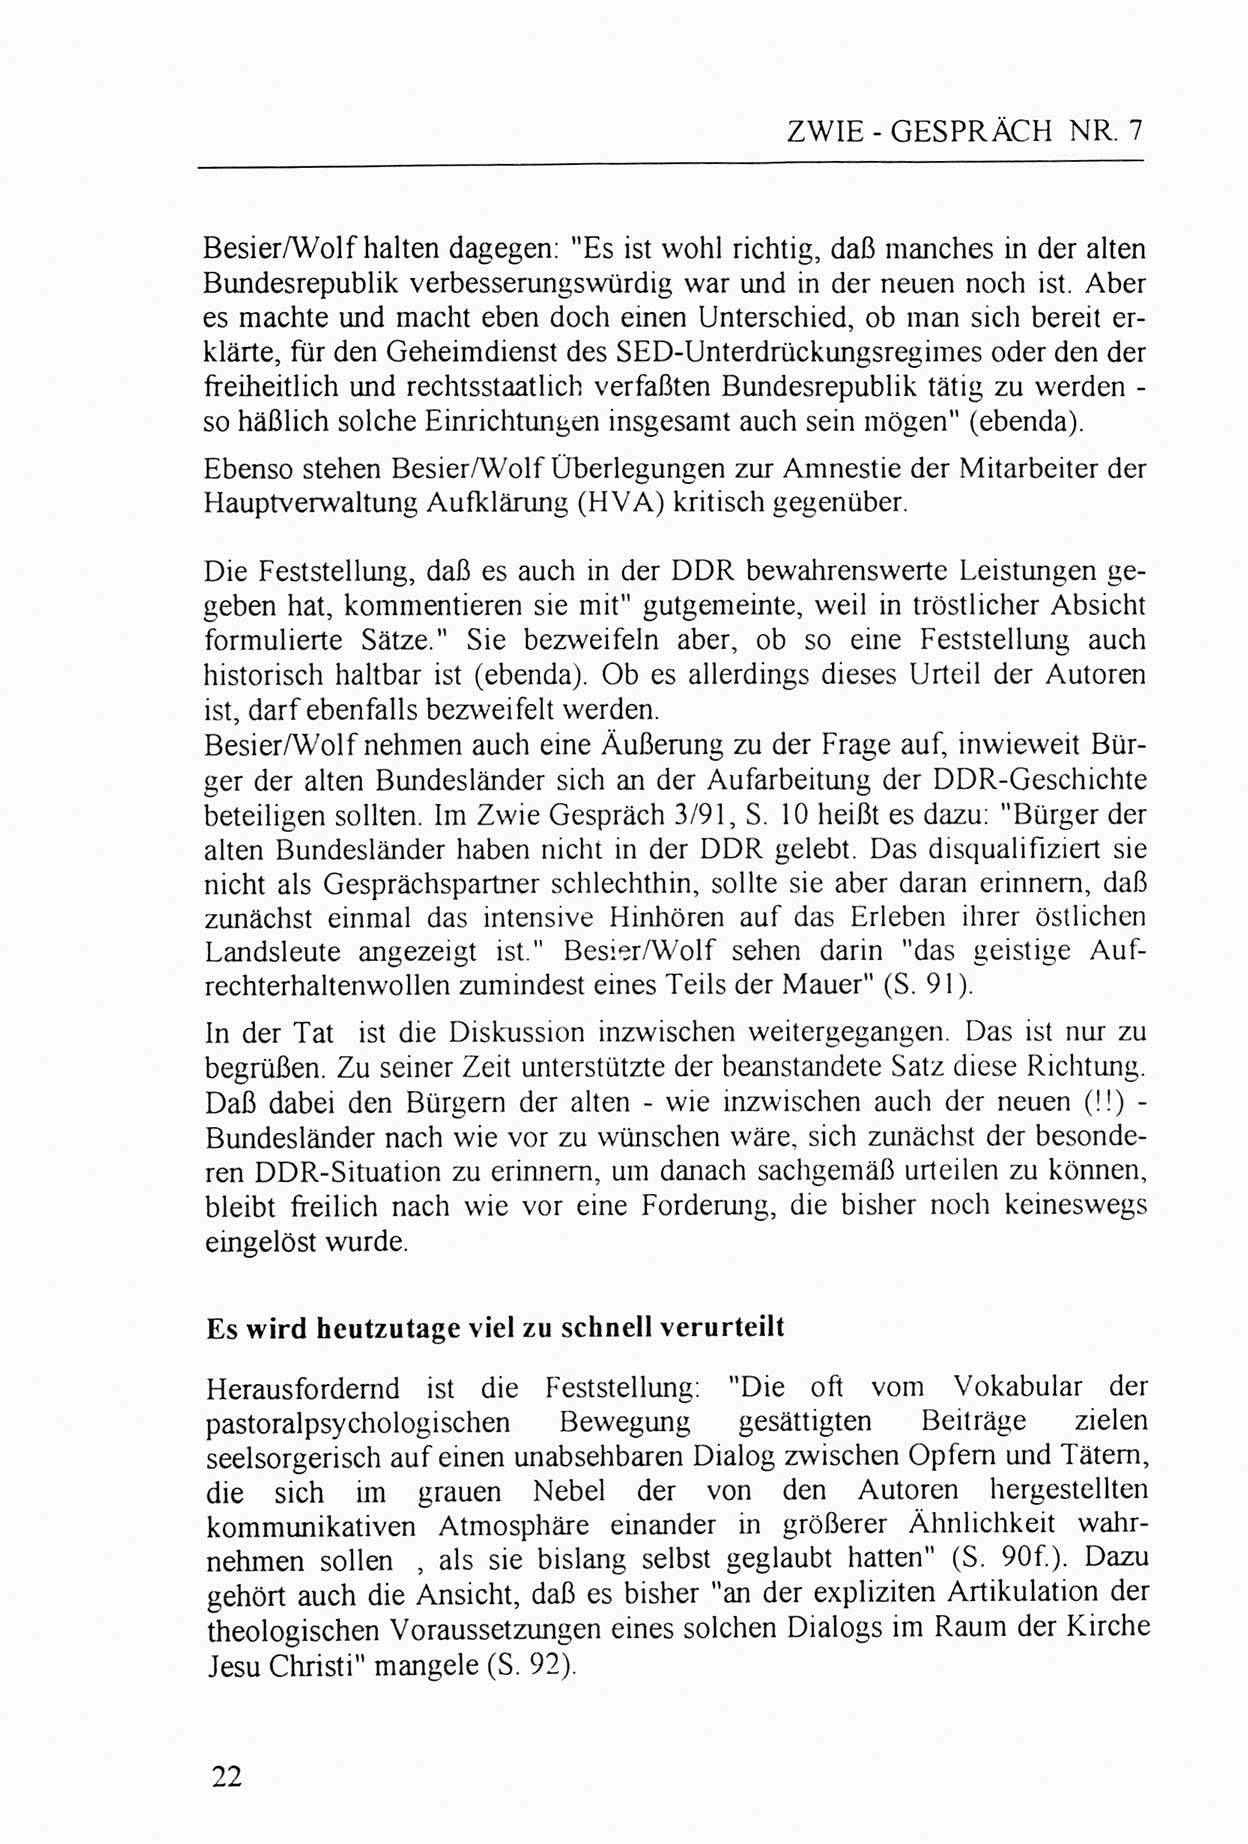 Zwie-Gespräch, Beiträge zur Aufarbeitung der Staatssicherheits-Vergangenheit [Deutsche Demokratische Republik (DDR)], Ausgabe Nr. 7, Berlin 1992, Seite 22 (Zwie-Gespr. Ausg. 7 1992, S. 22)